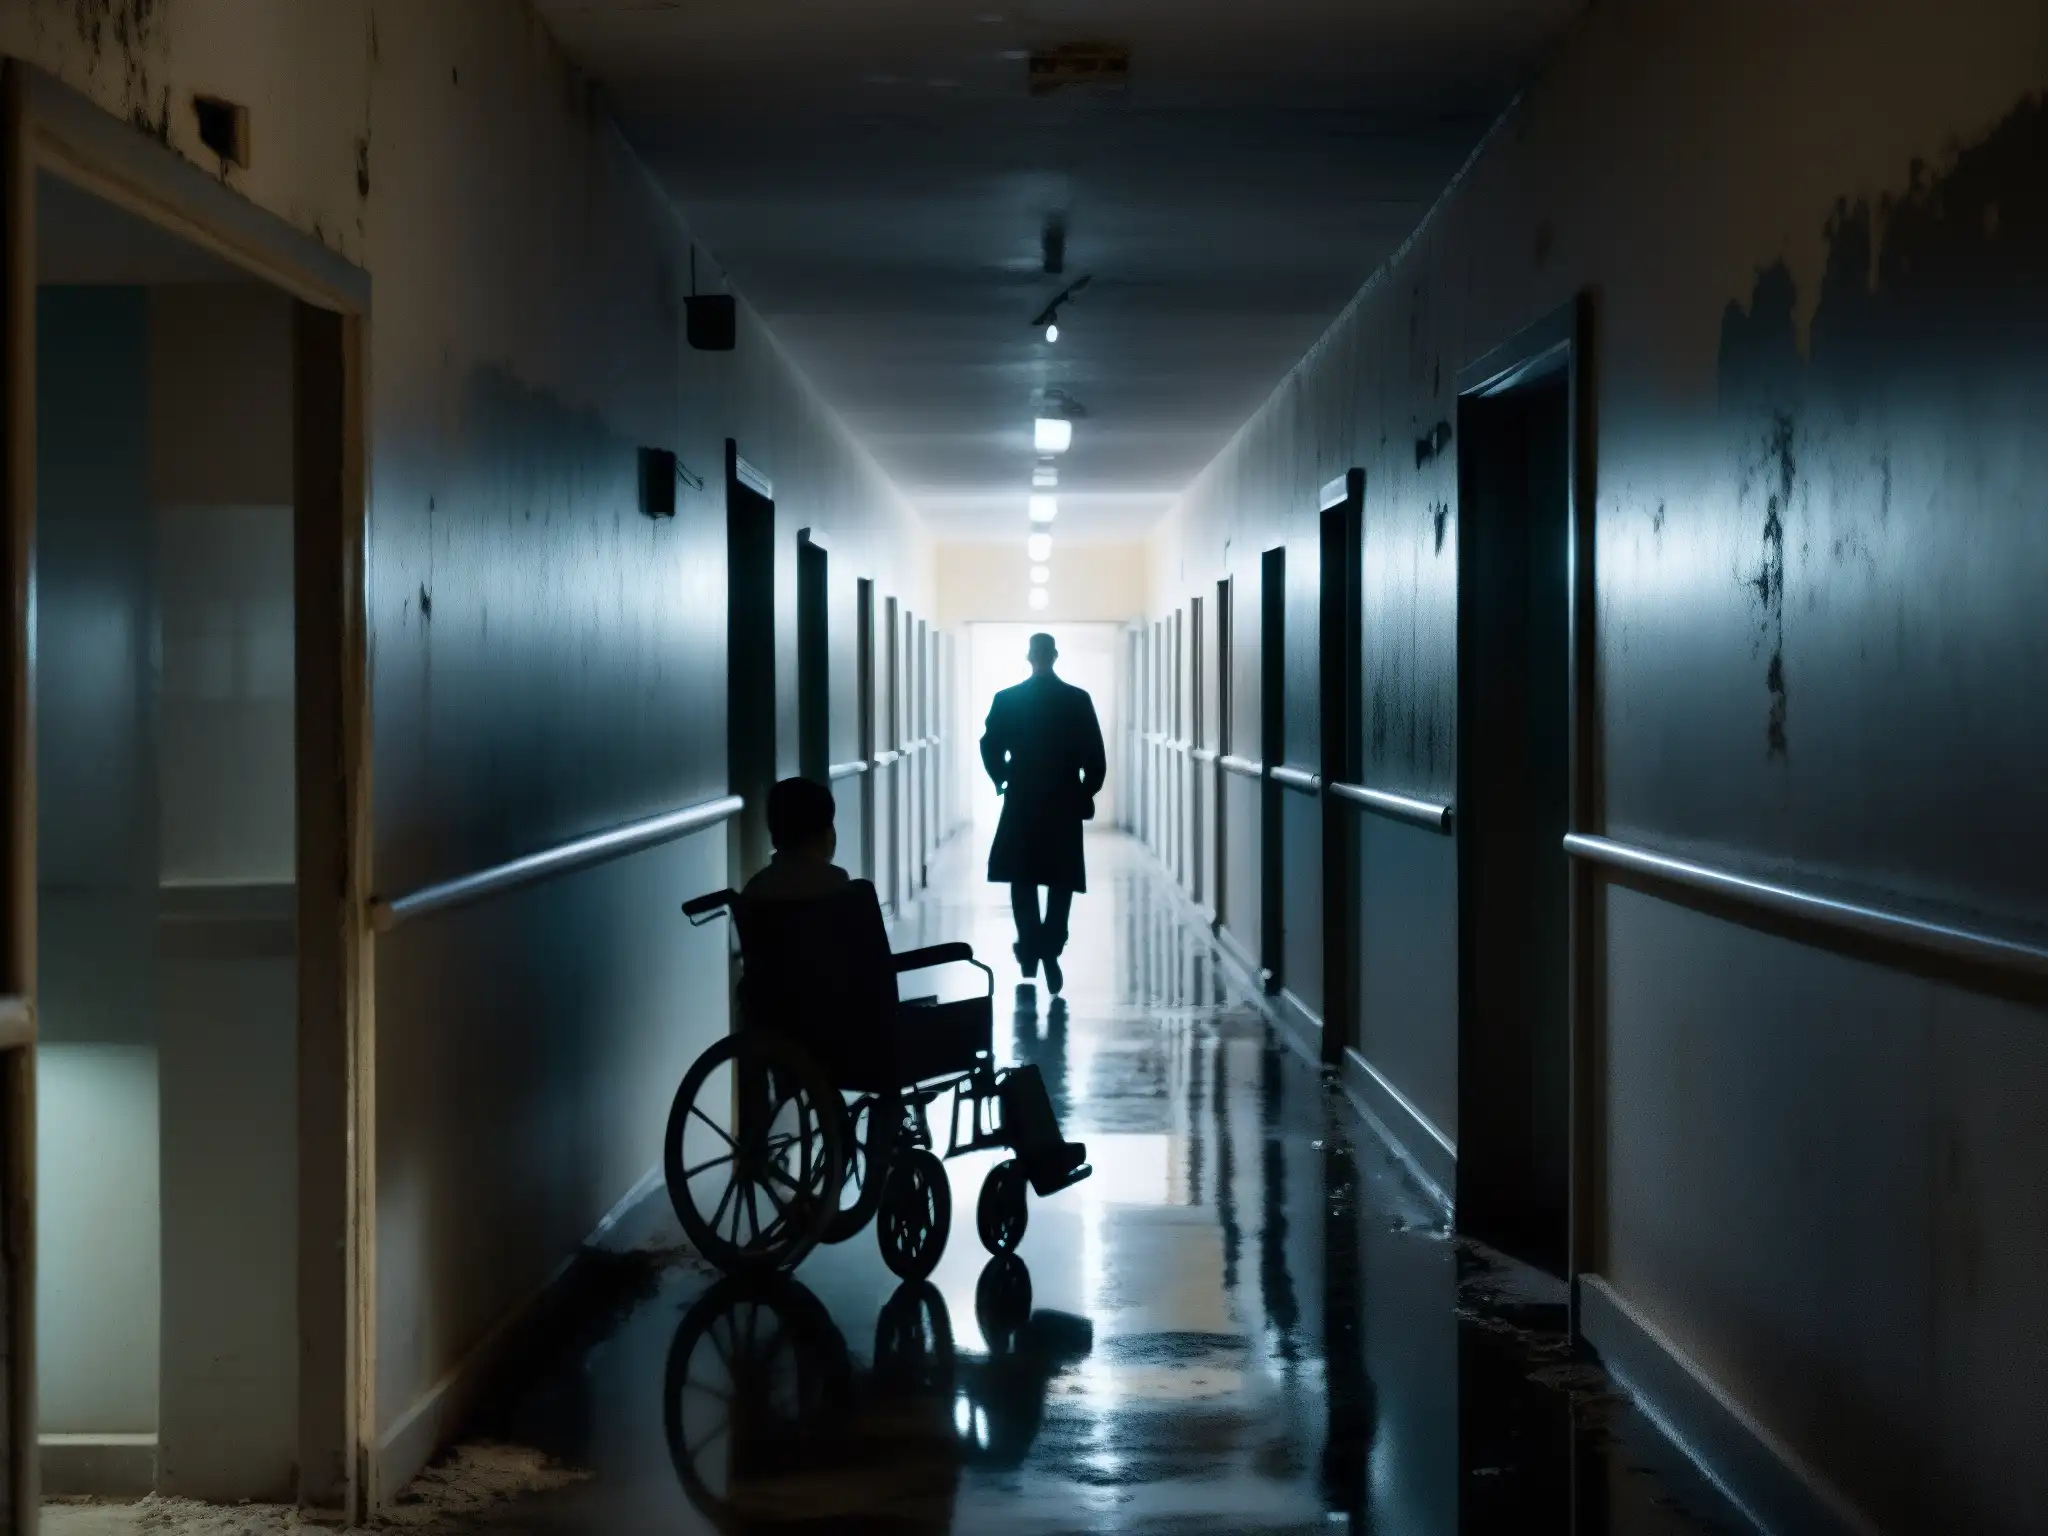 Corredores abandonados del Hospital Juárez La Planchada, con pintura descascarada, luces parpadeantes y una silla de ruedas en la penumbra, evocando misterio y presencia fantasmal